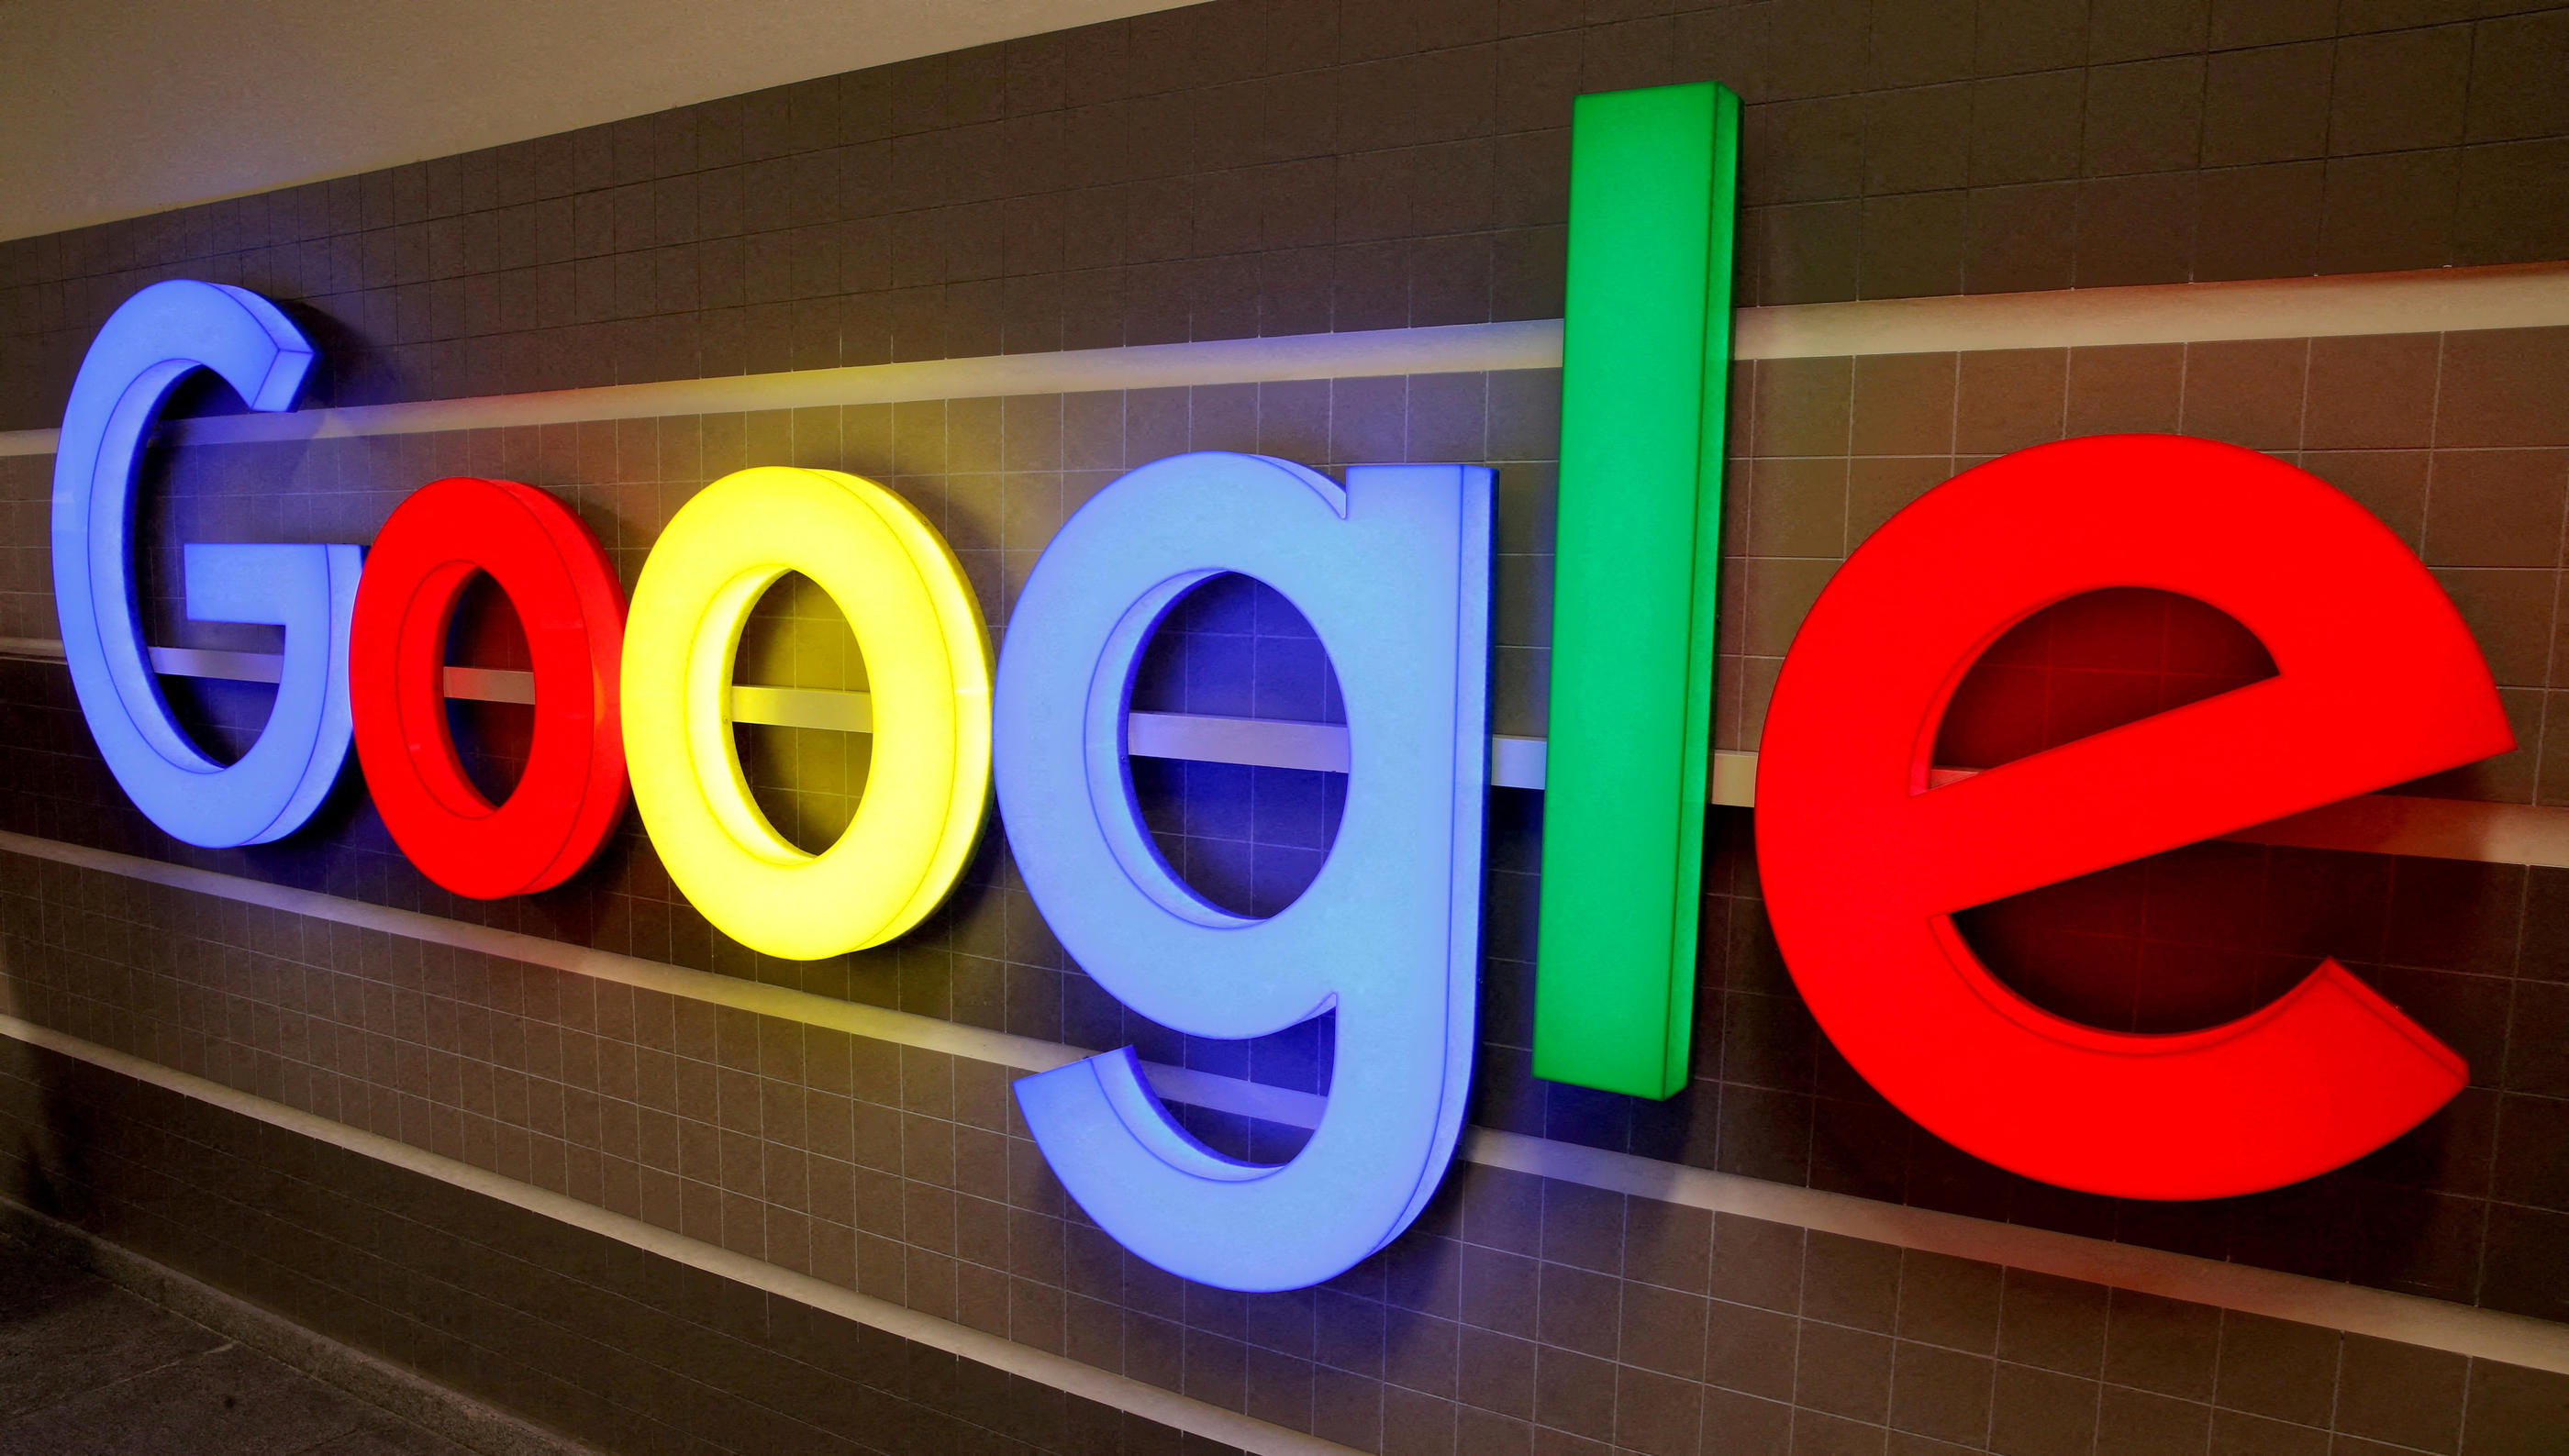 Google a fait savoir que ses équipes techniques enquêtaient pour corriger le bug informatique. Reuters/Arnd Wiegmann